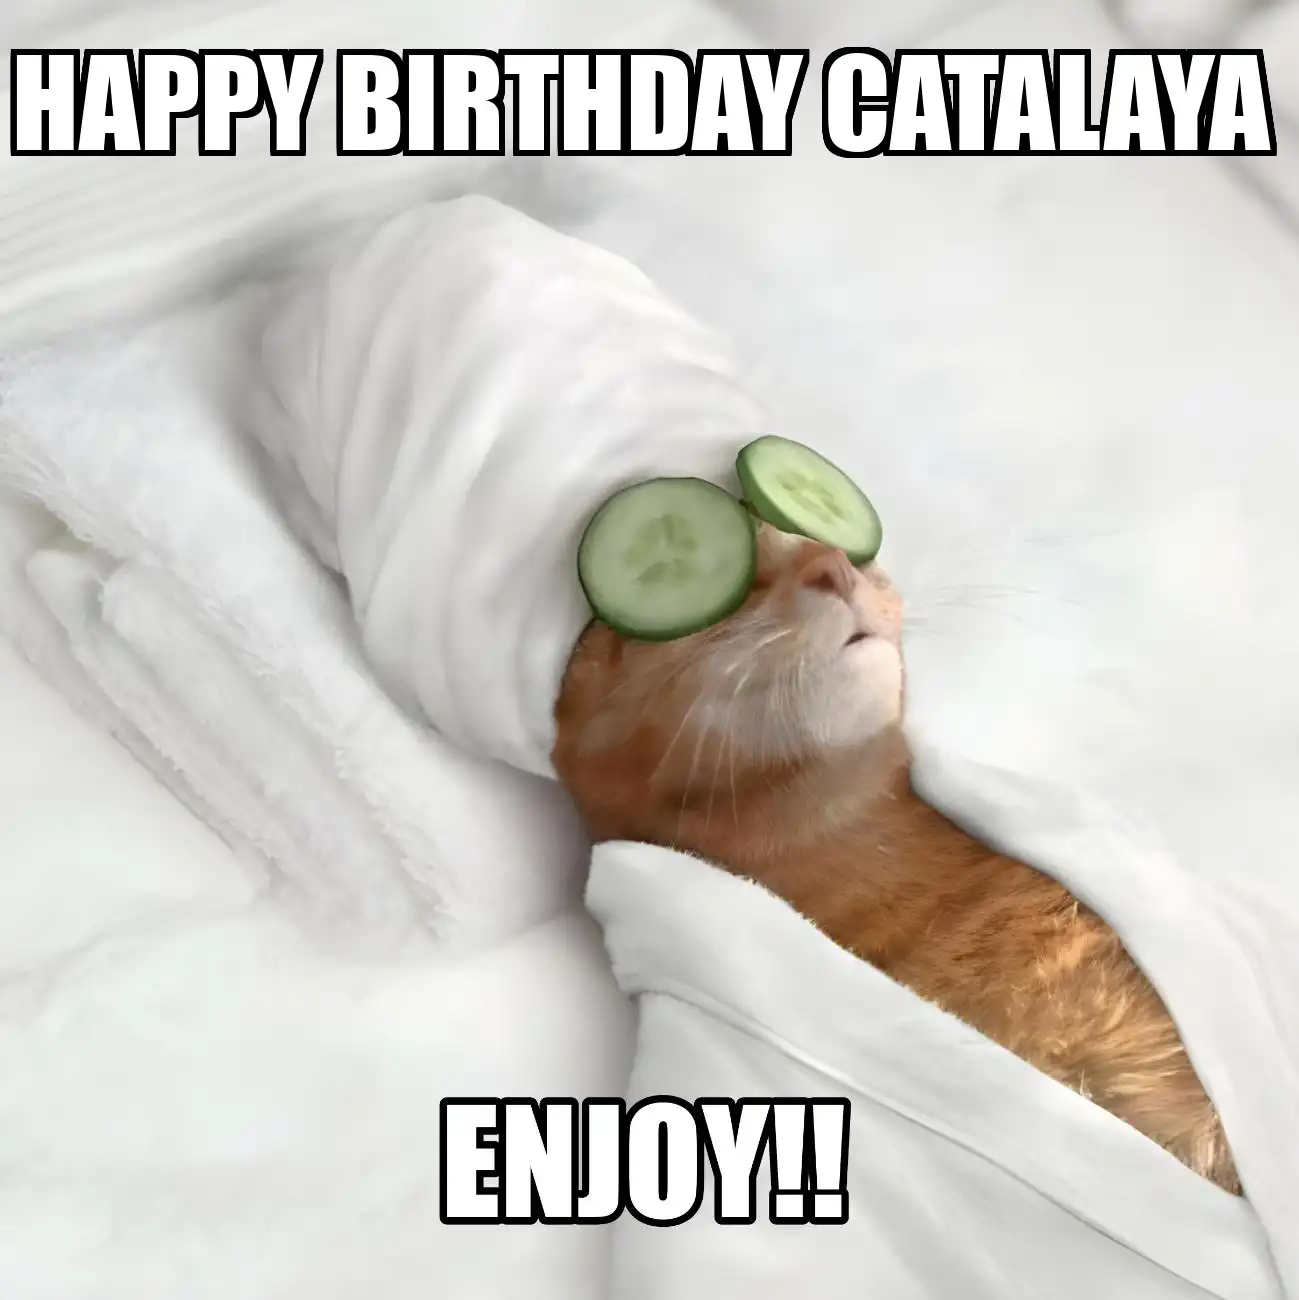 Happy Birthday Catalaya Enjoy Cat Meme